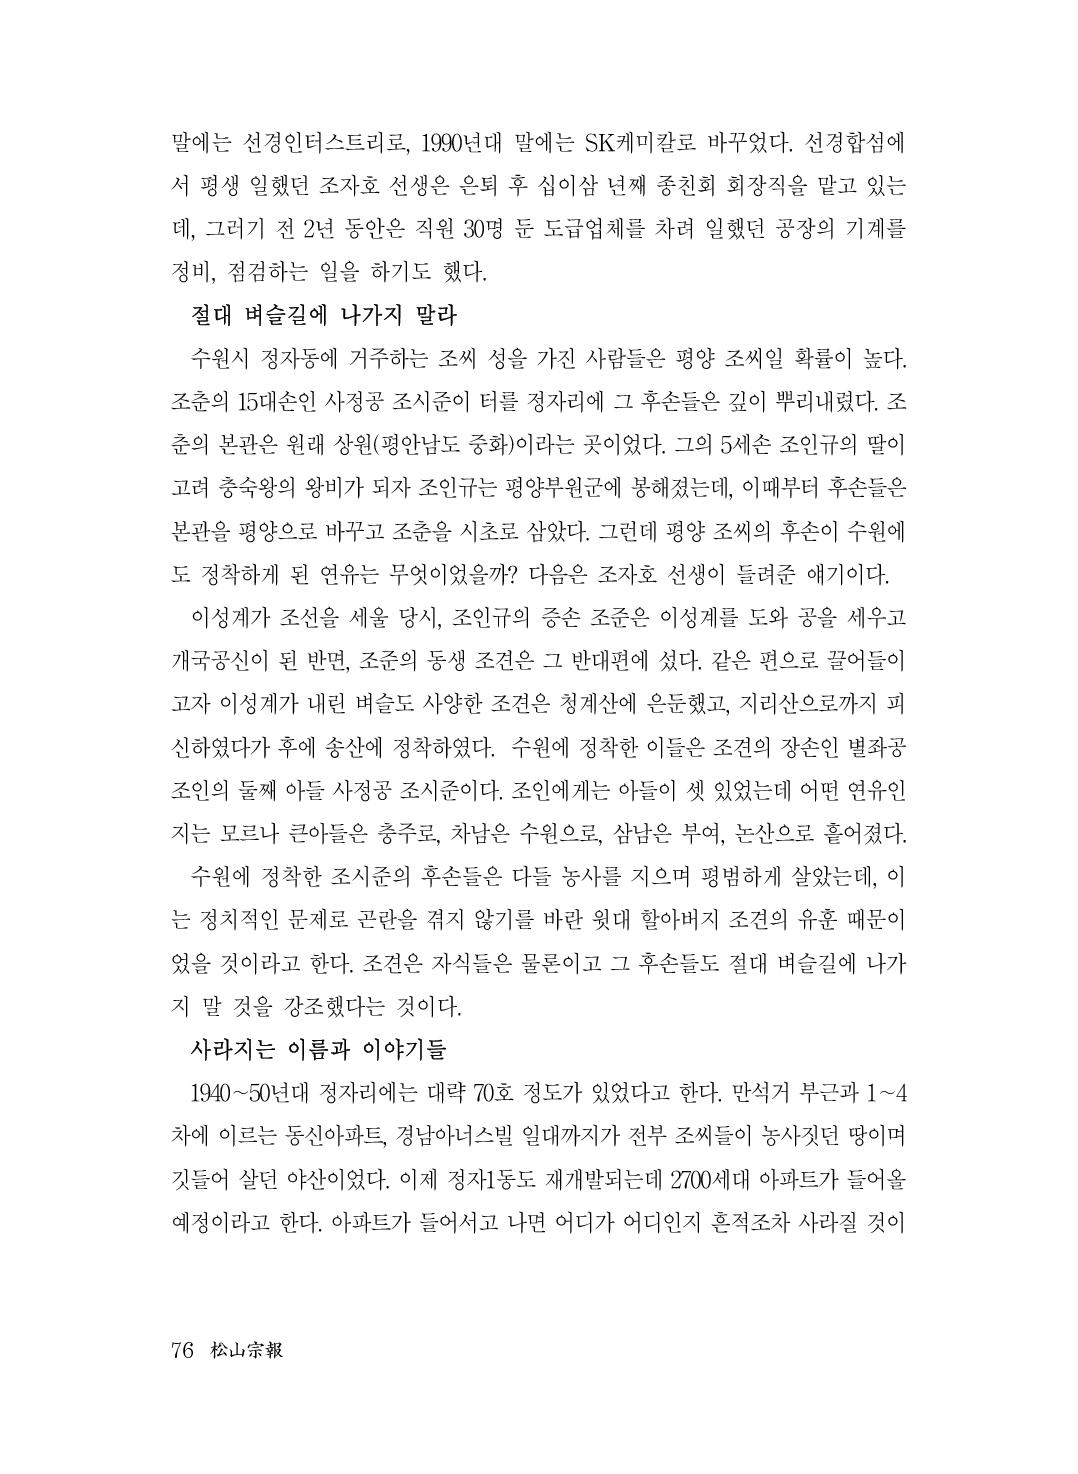 (전체) 송산종보(27호)(최종)_77.jpg